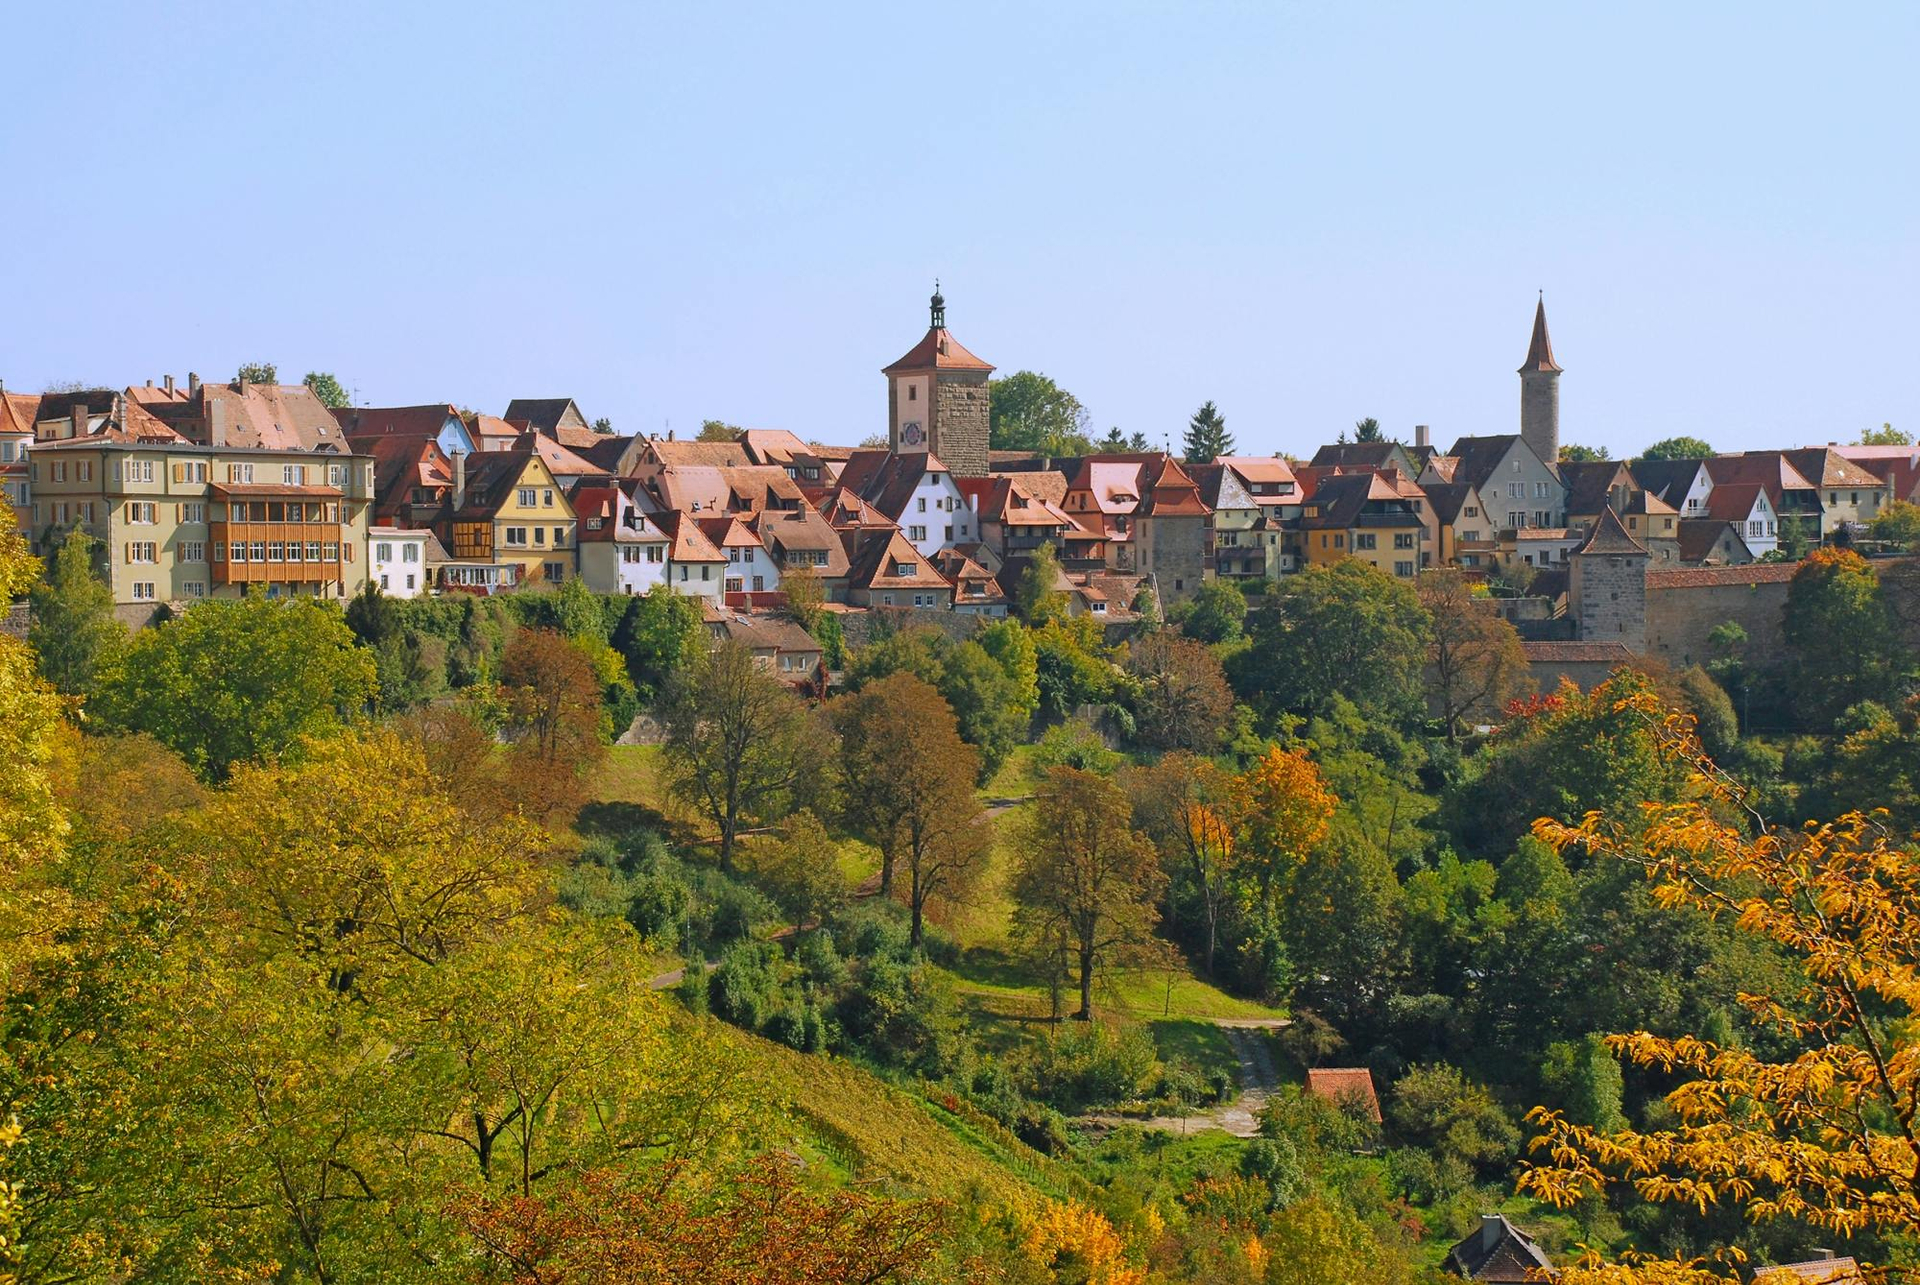 Ruta Romántica y Rothenburg ob der Tauber desde Würzburg